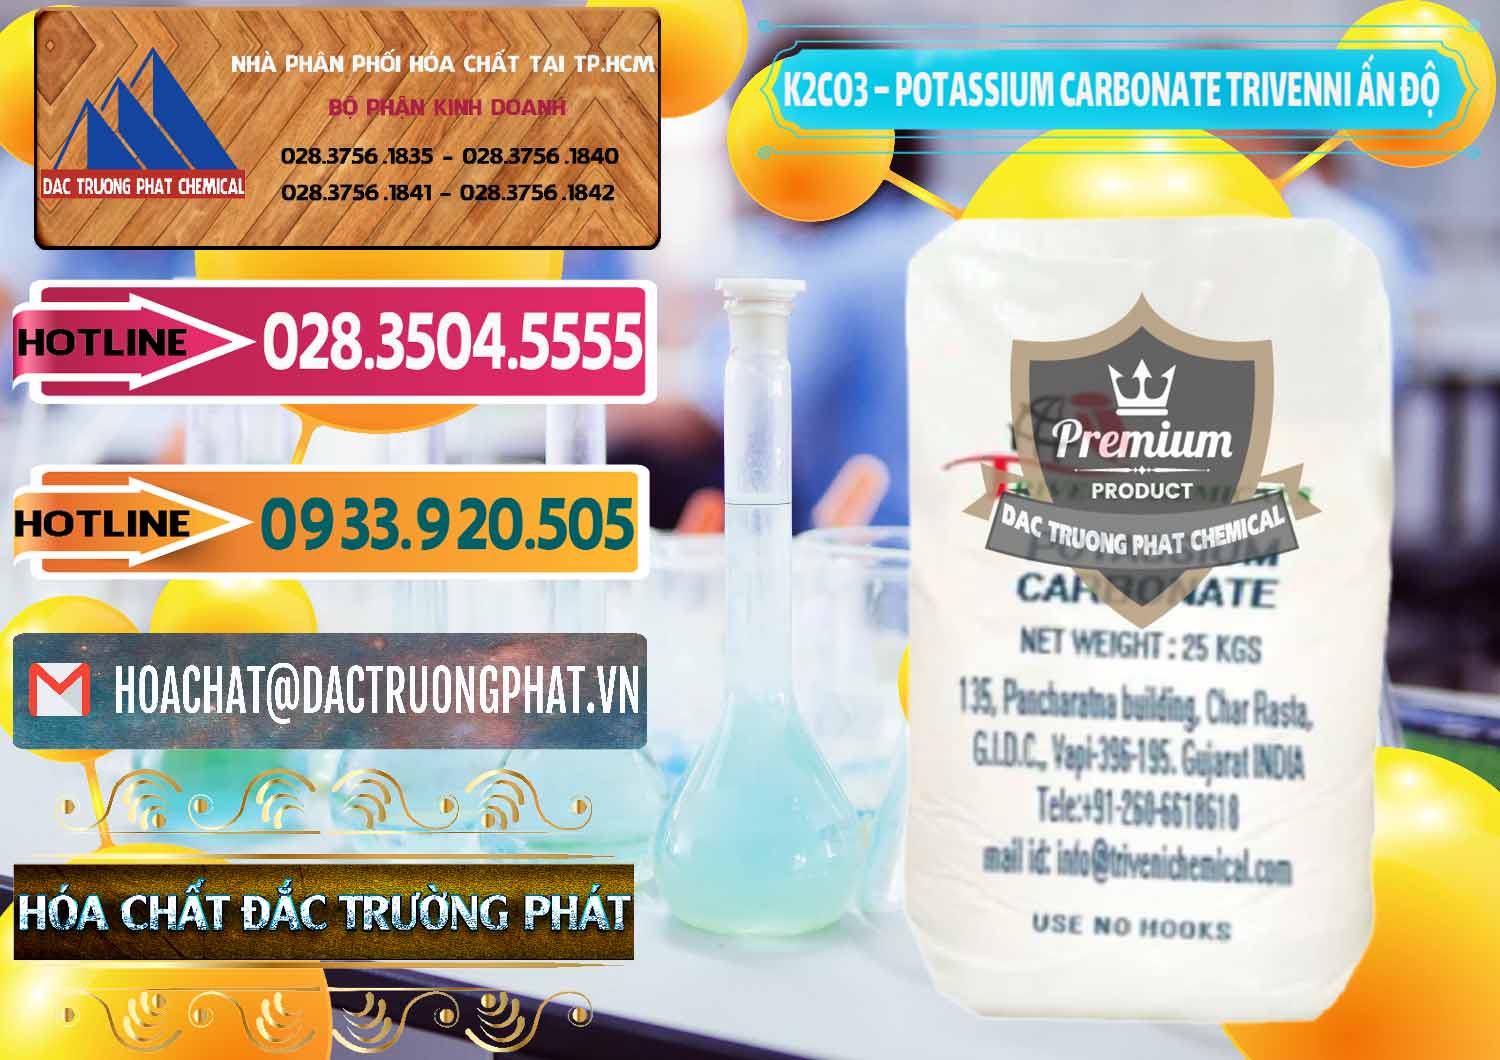 Cty kinh doanh - bán K2Co3 – Potassium Carbonate Trivenni Ấn Độ India - 0473 - Công ty phân phối & nhập khẩu hóa chất tại TP.HCM - dactruongphat.vn